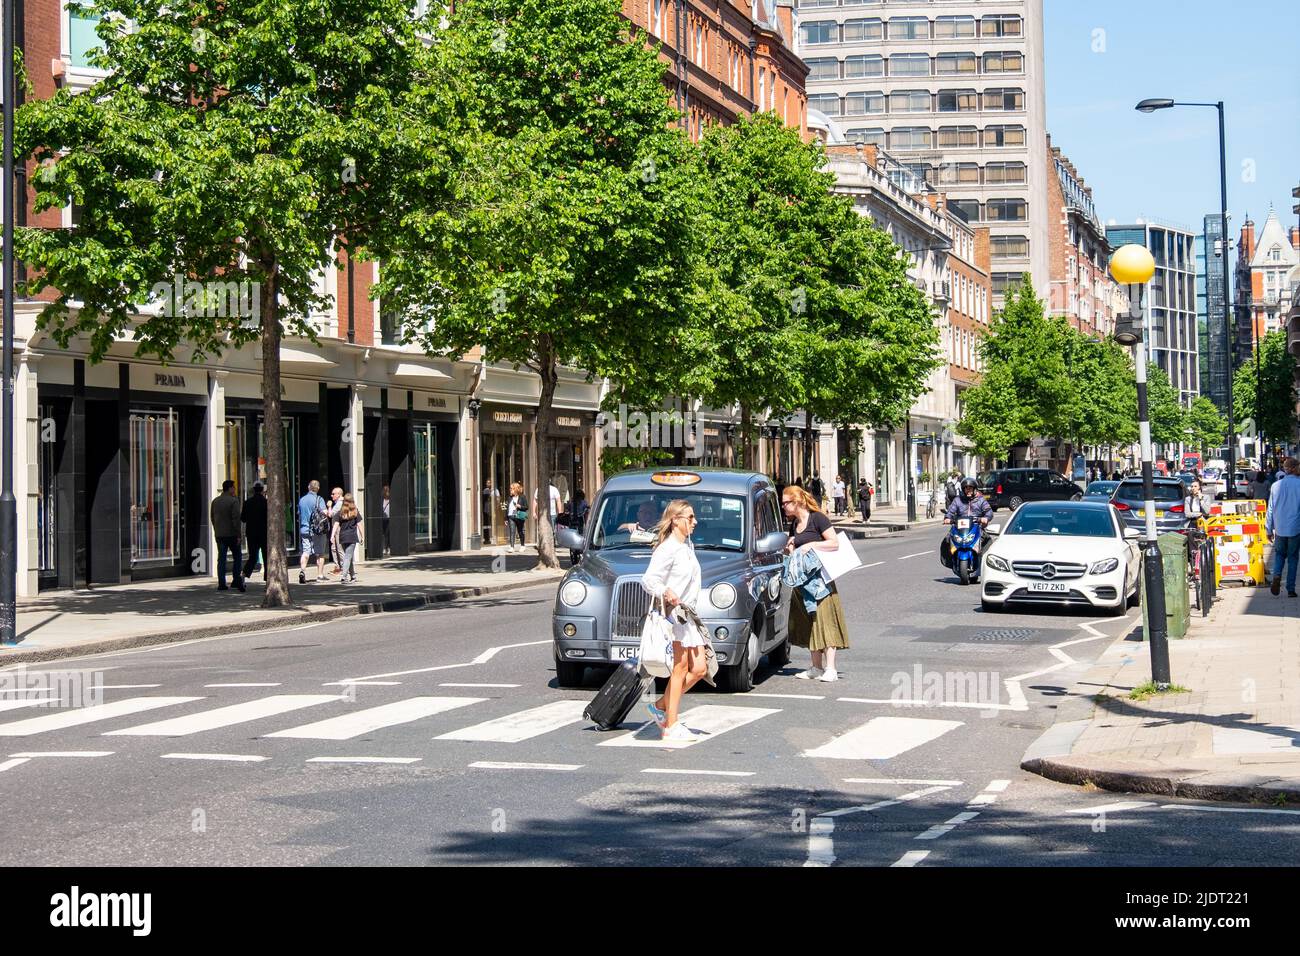 London - 2022. Mai: Sloane Street, ein gehobenes Einkaufsziel in knightsbridge / Chelsea und Kensington in London Stockfoto